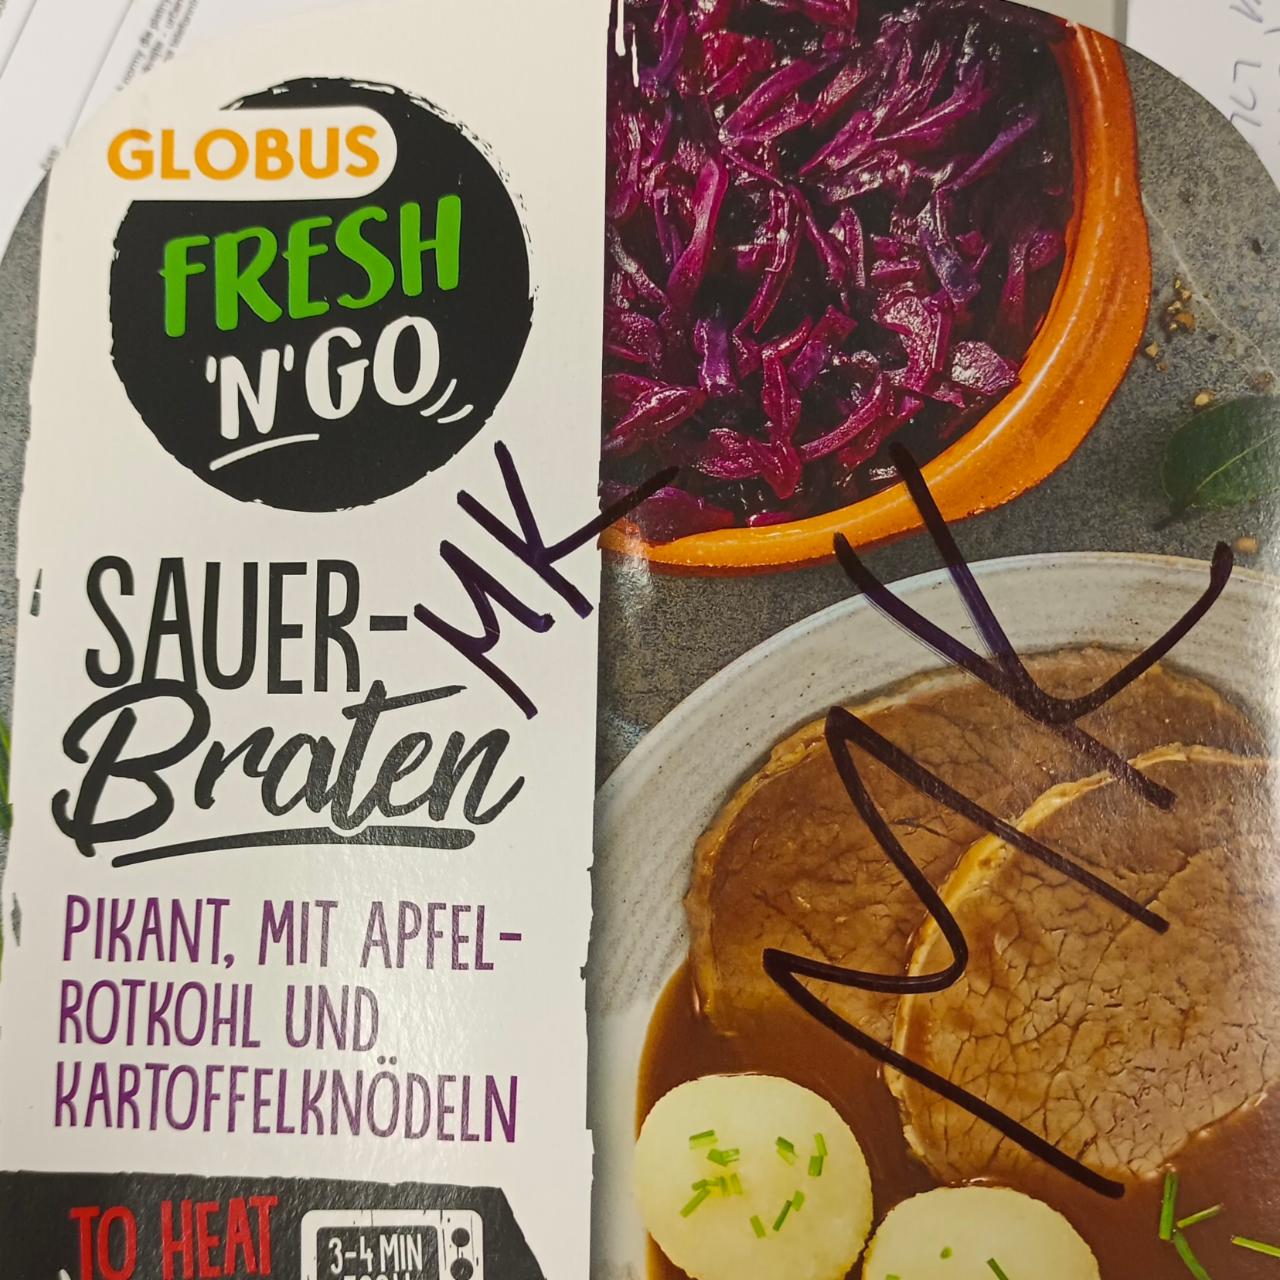 Fotografie - FRESH 'N' GO SauerBraten pikant, mit apfelrotkohl und kartoffelknödel Globus